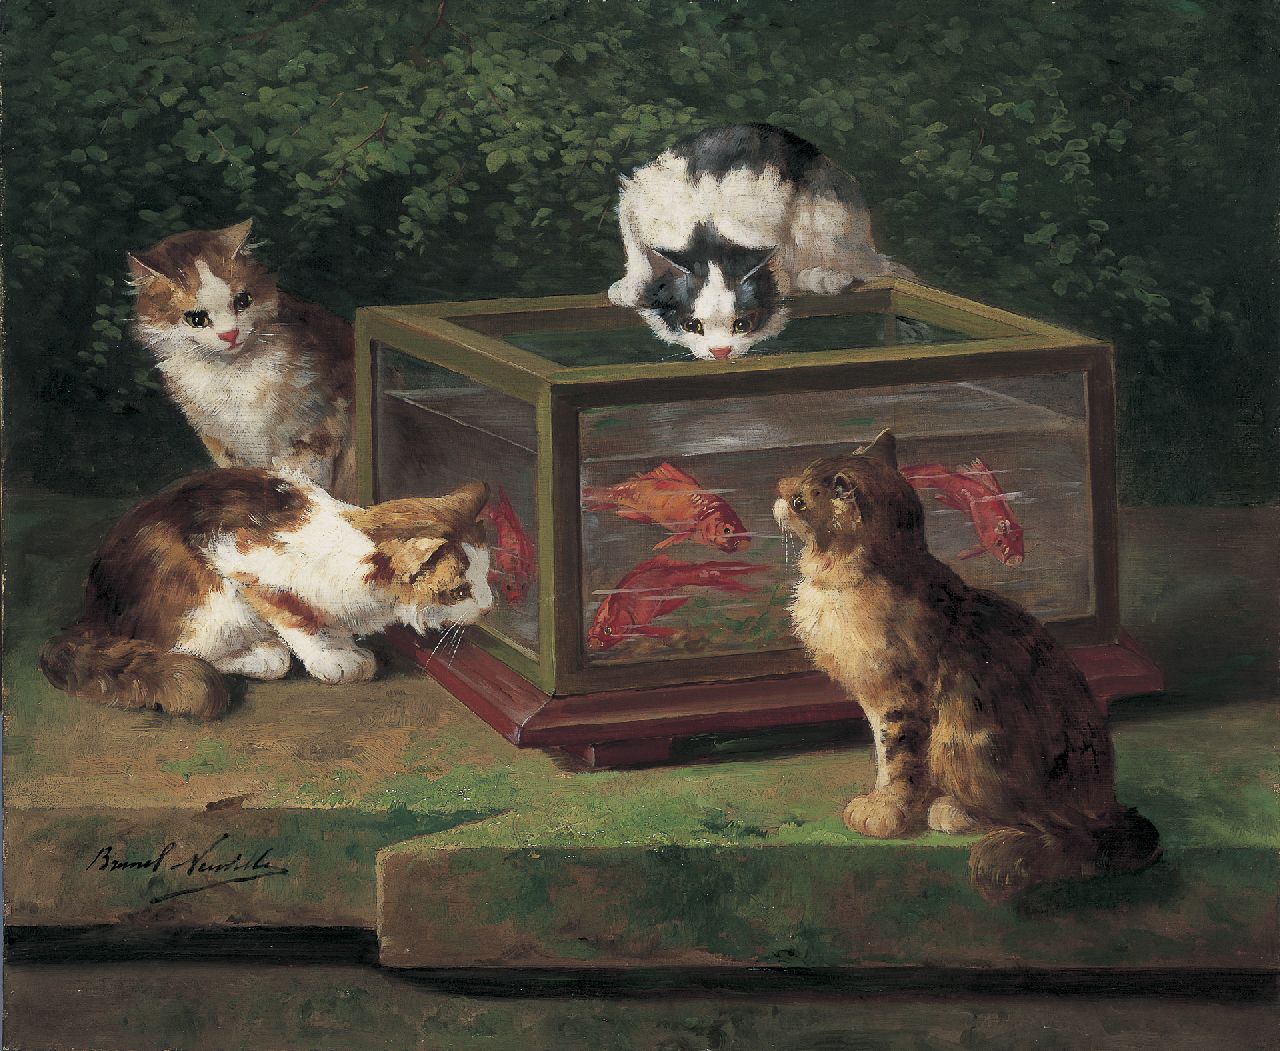 Brunel de Neuville A.A. de | Alfred-Arthur de Brunel de Neuville, Four hungry cats, oil on canvas 54.0 x 65.2 cm, signed l.l.